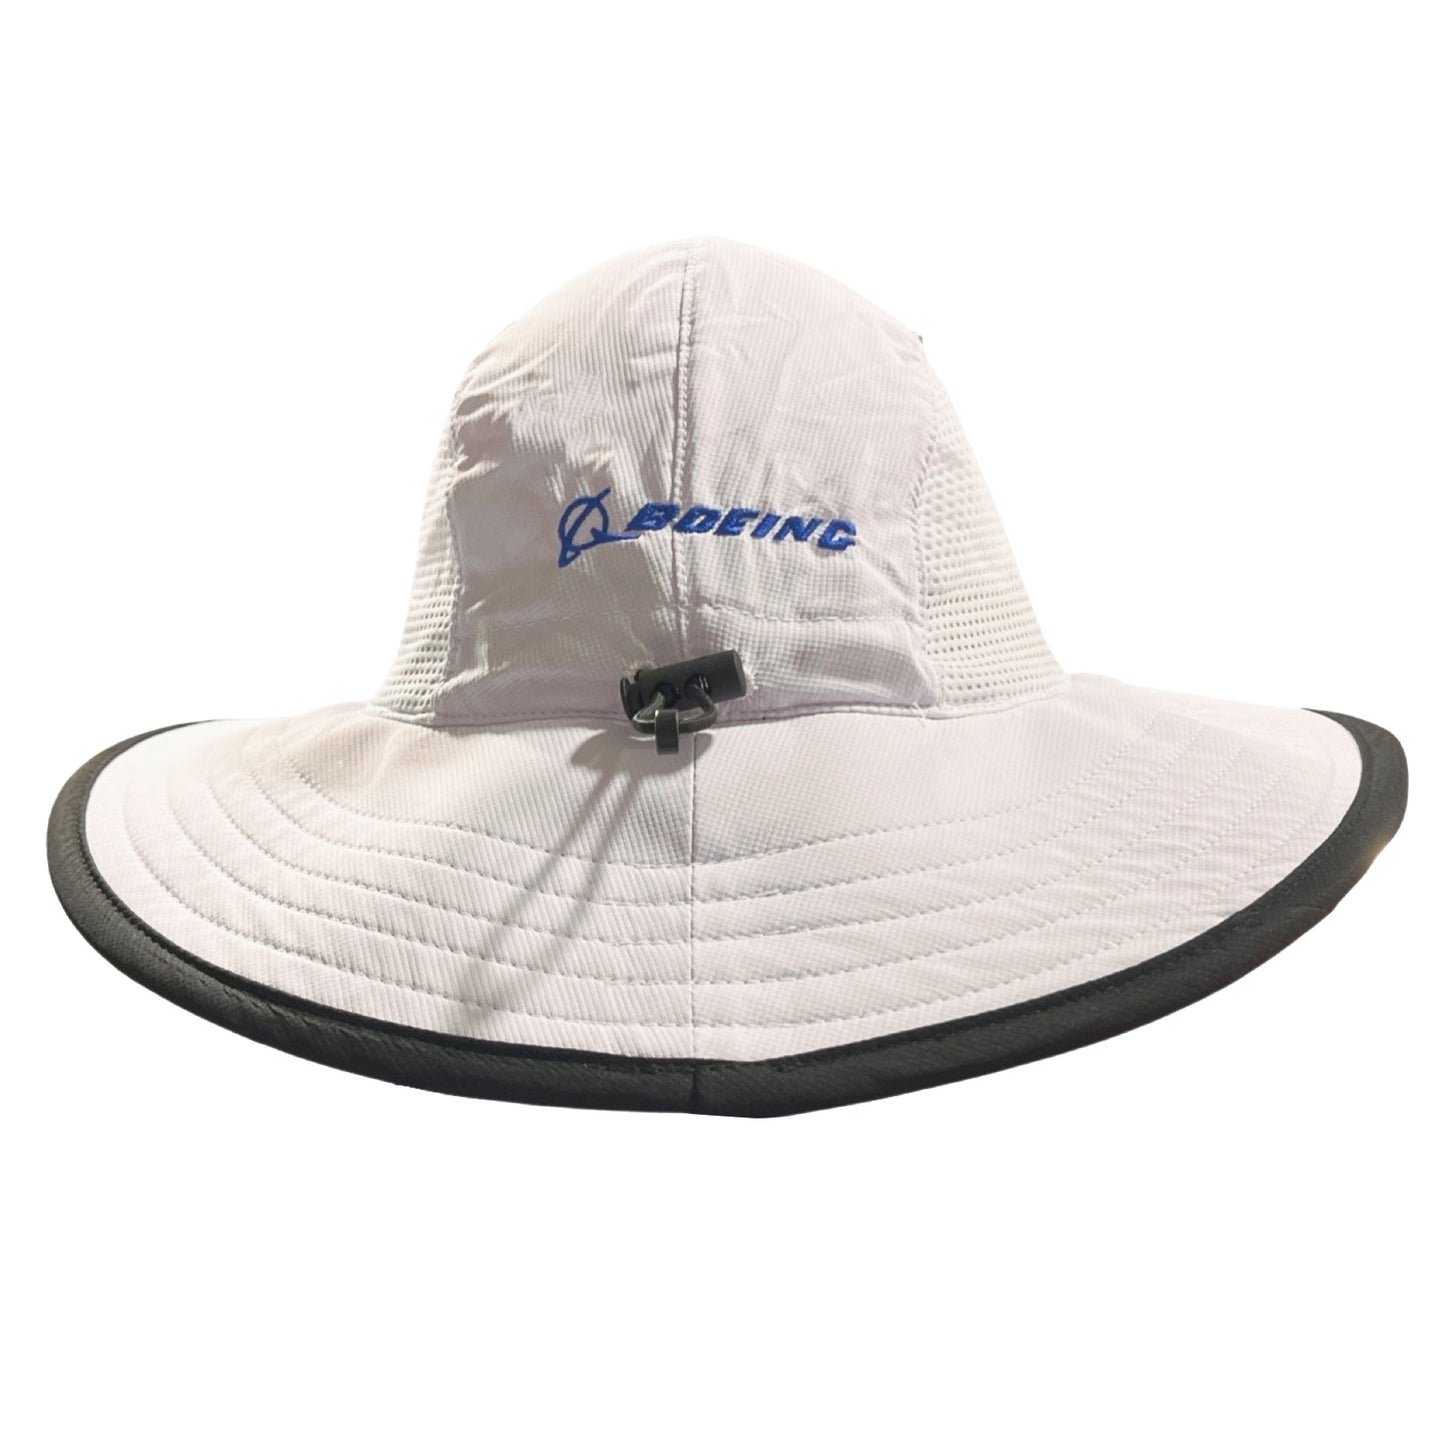 RBC Heritage Bucket Hat - White